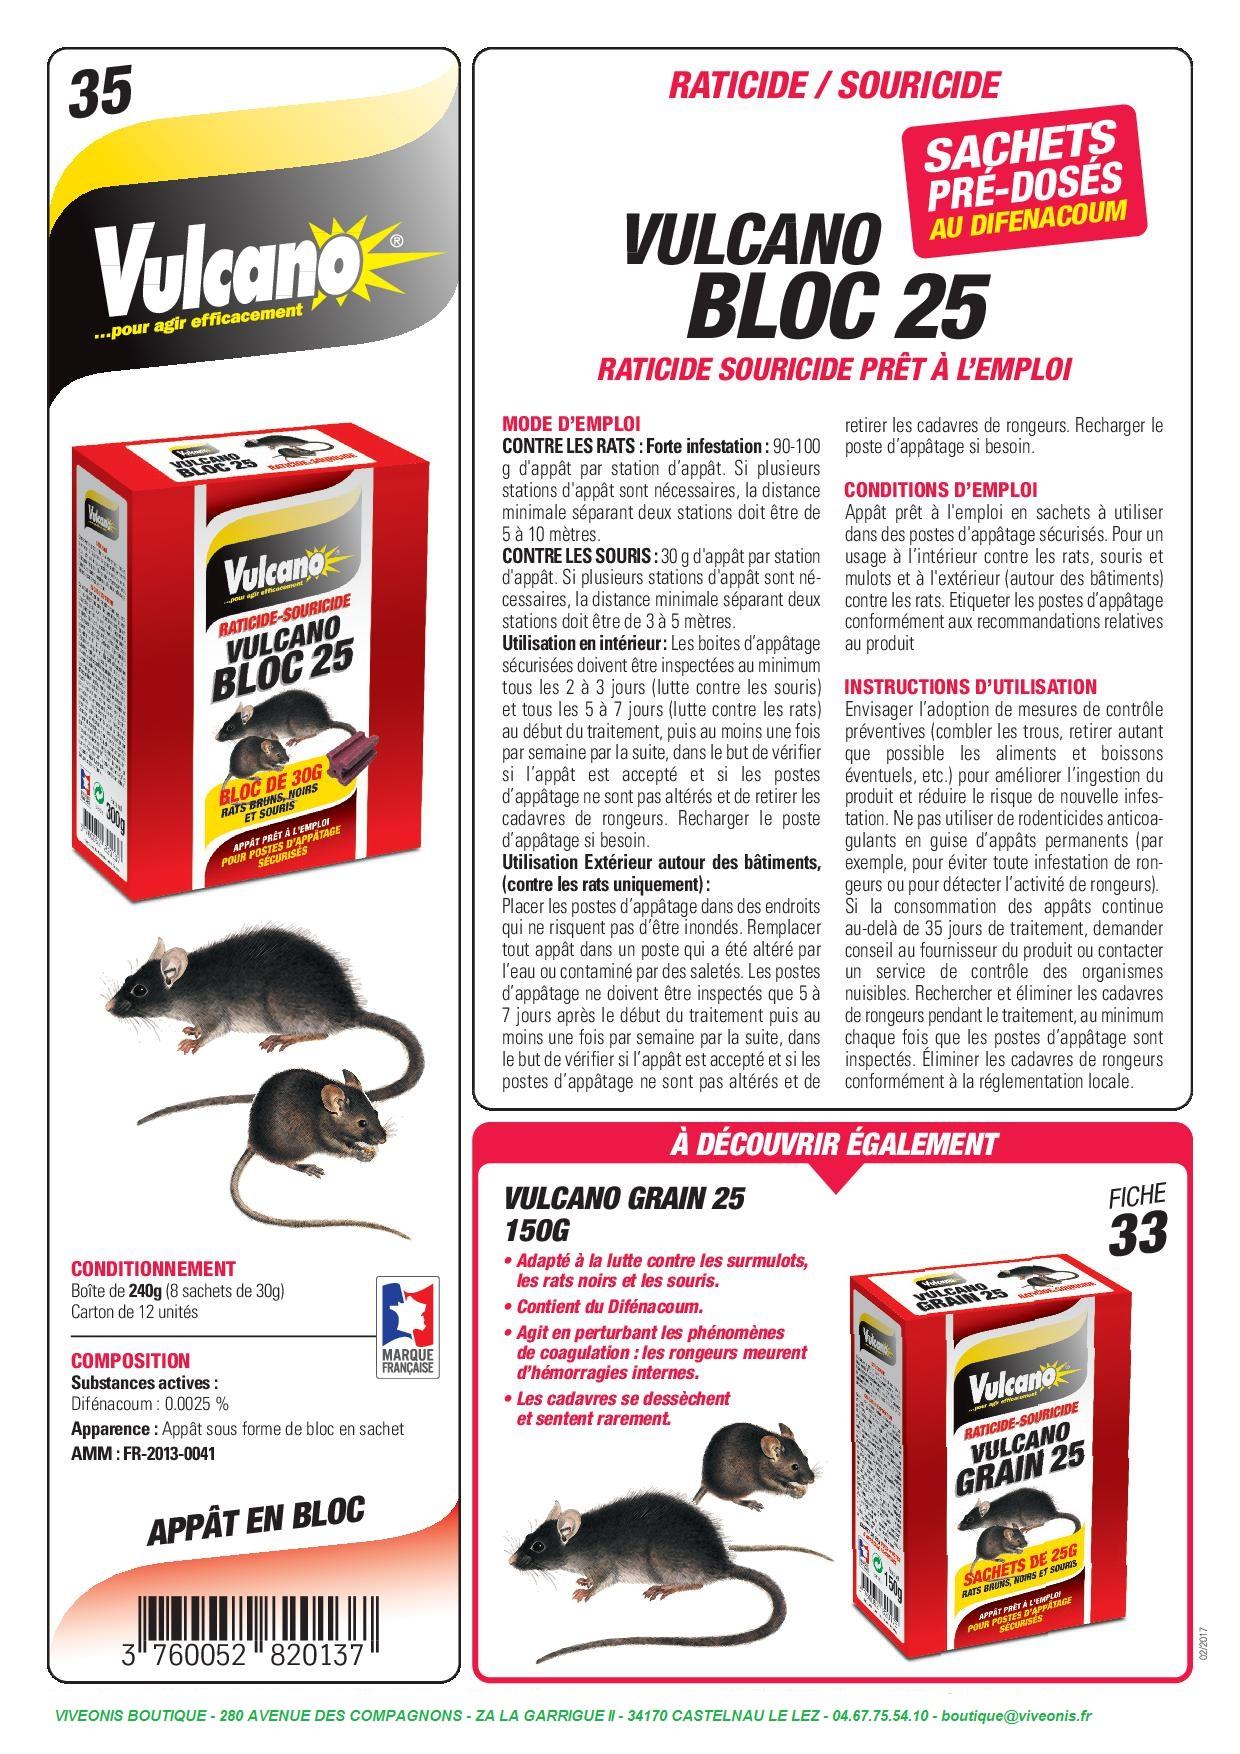 BLOC 25 VULCANO Raticide-Souricide au Difenacoum - Viveonis boutique